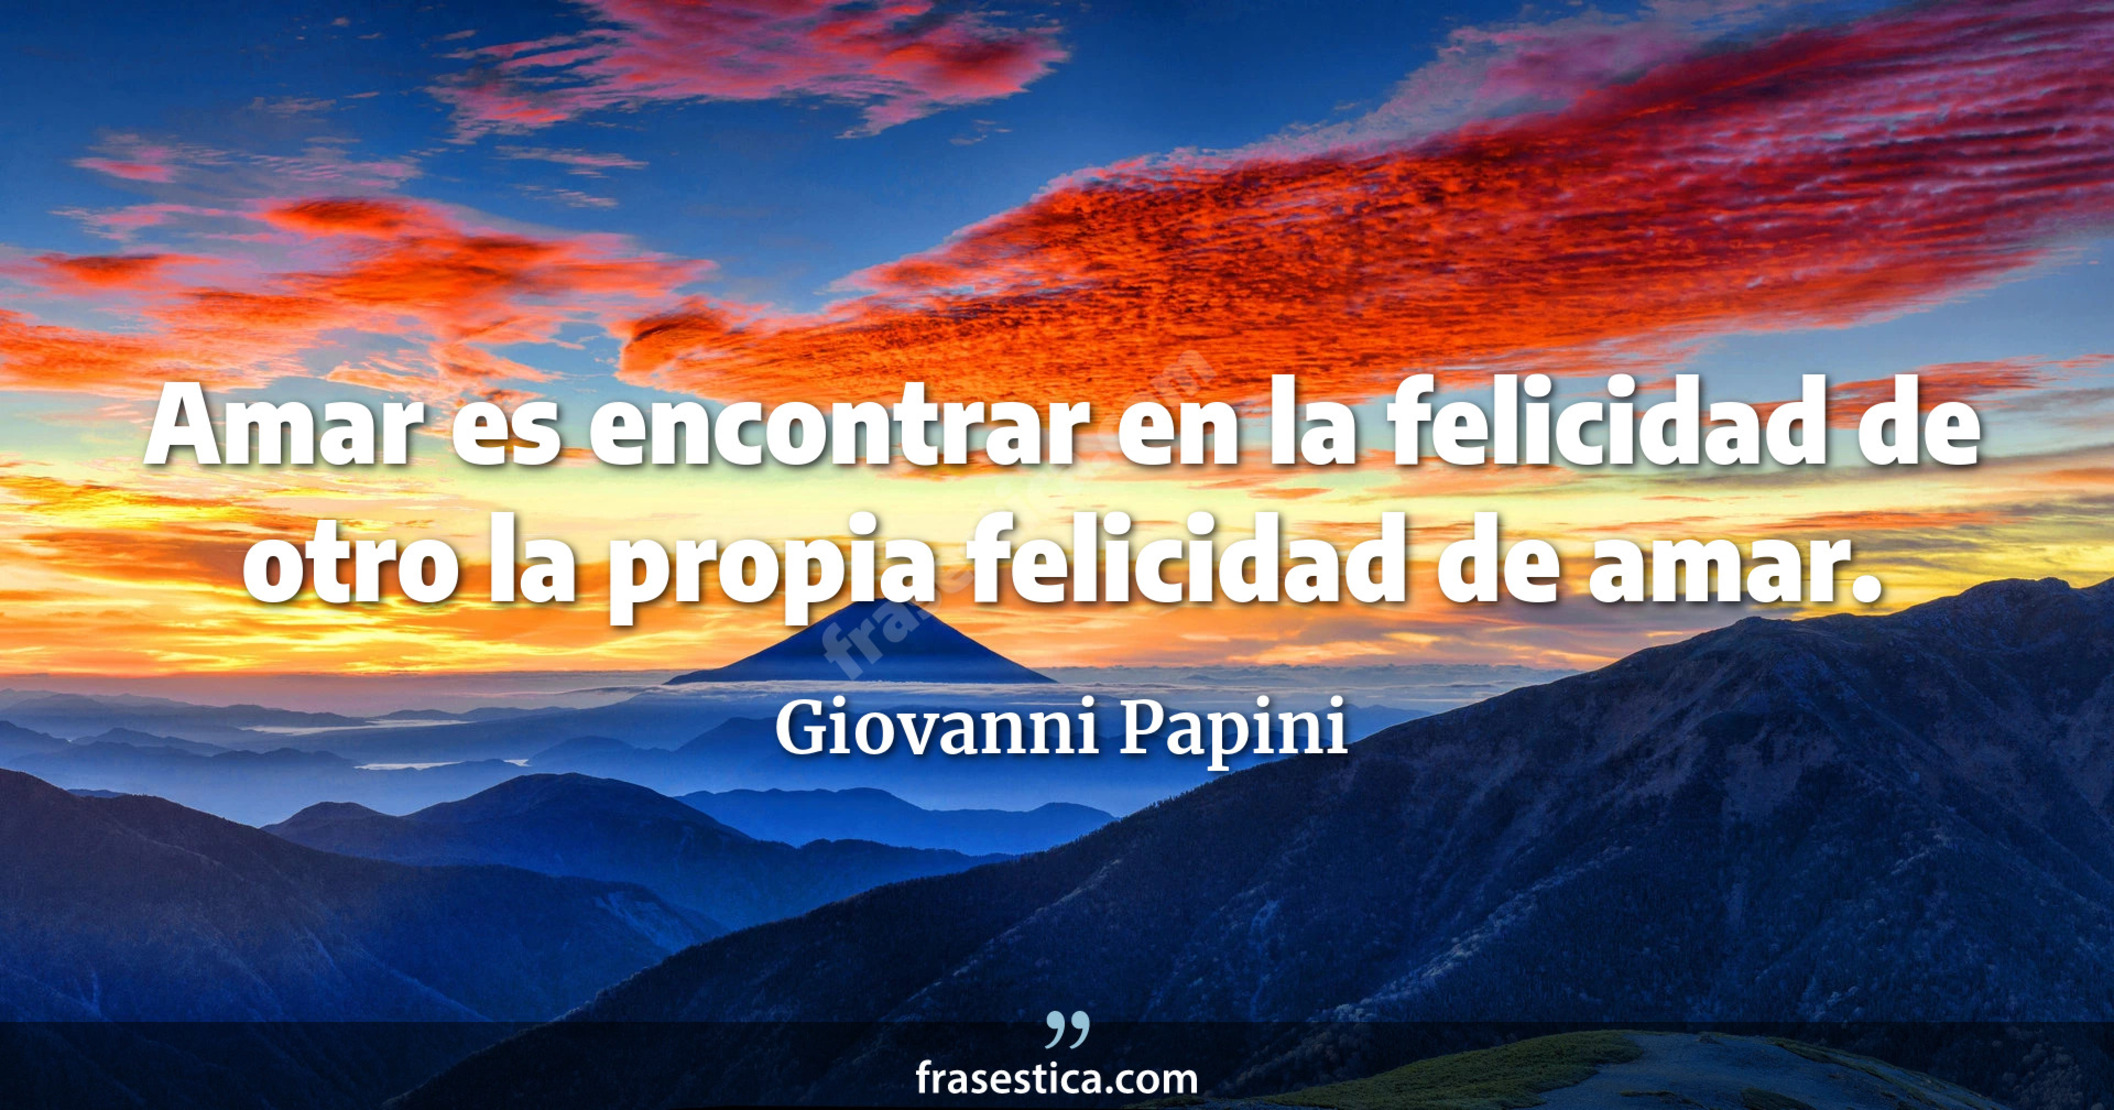 Amar es encontrar en la felicidad de otro la propia felicidad de amar. - Giovanni Papini